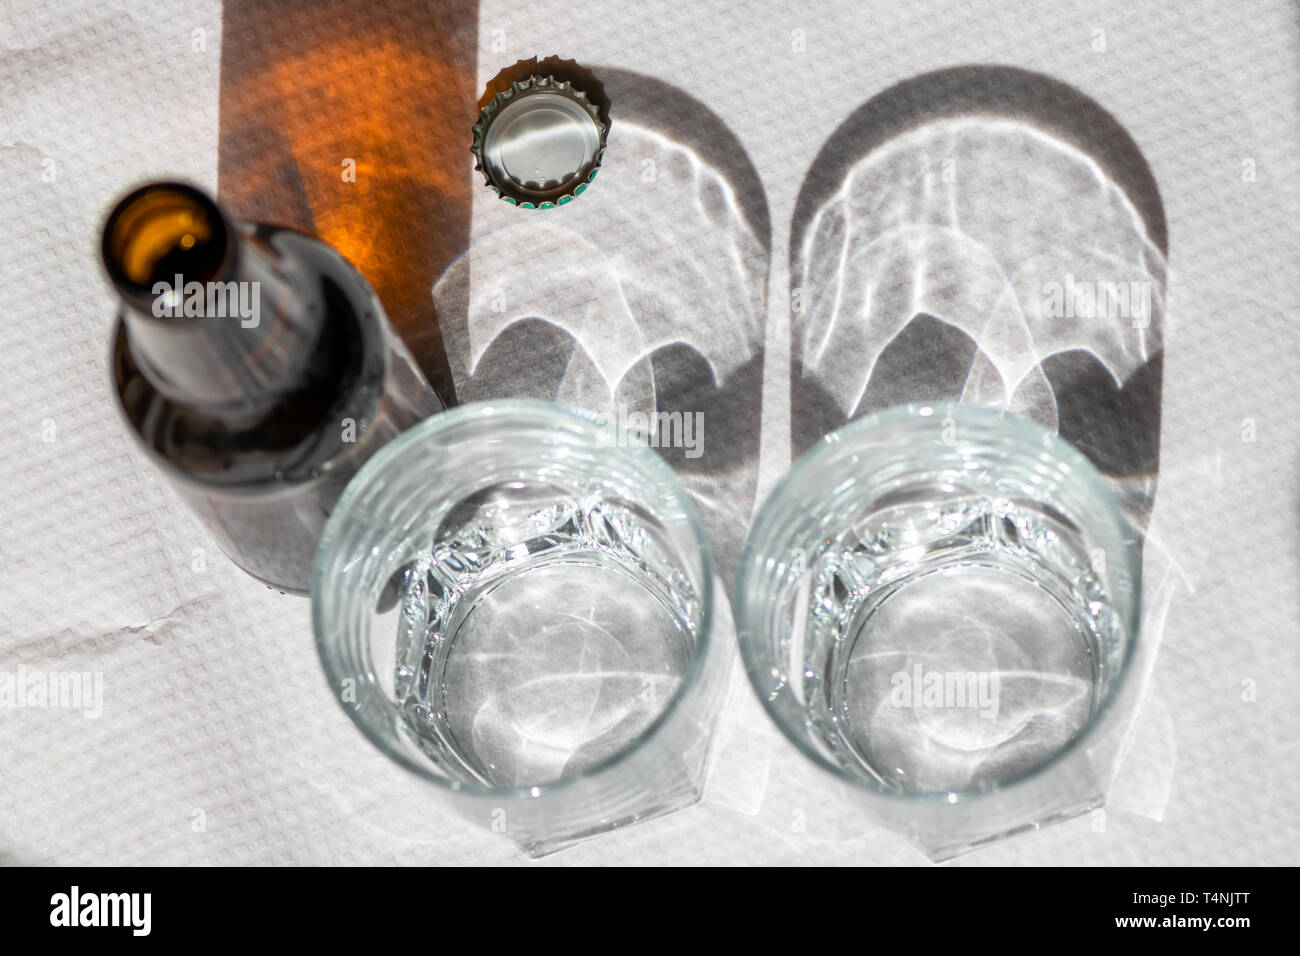 Deux verres de cristal et une bouteille de bière sur une nappe en papier blanc. Scène ensoleillée avec des ombres. Concept- partager. Banque D'Images